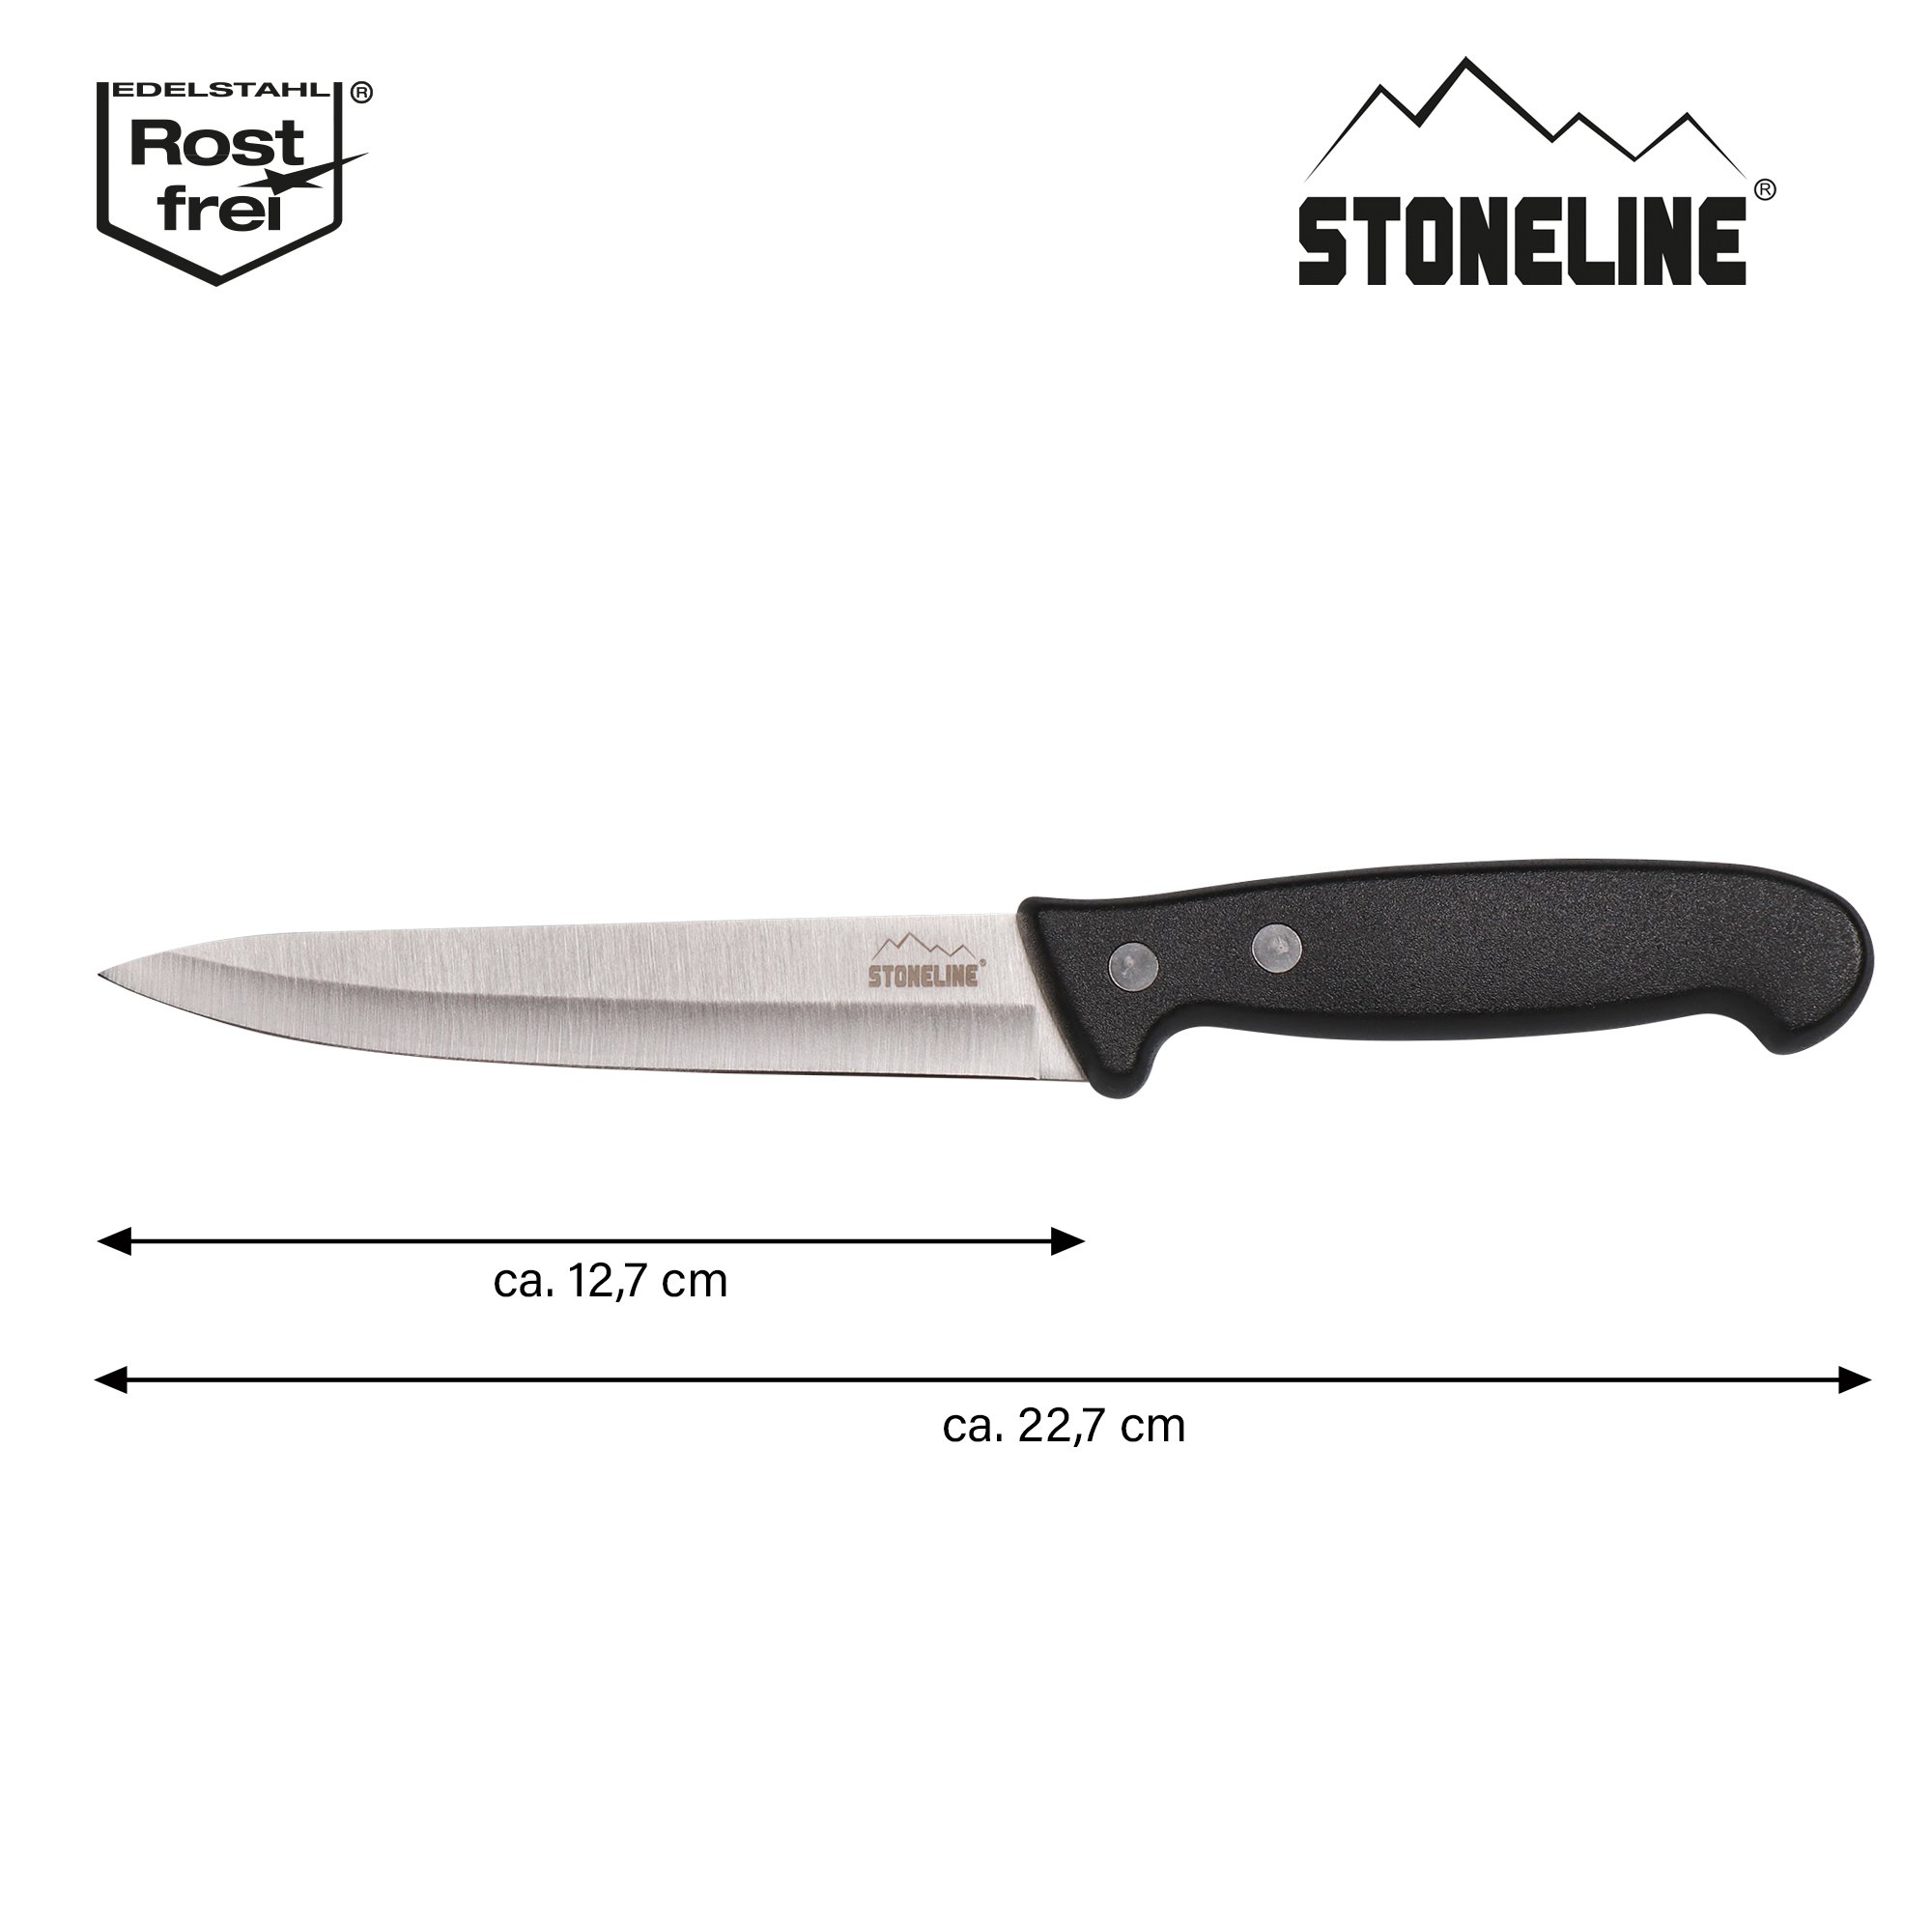 STONELINE® couteau à saucisson 22,7 cm, avec protège-lame